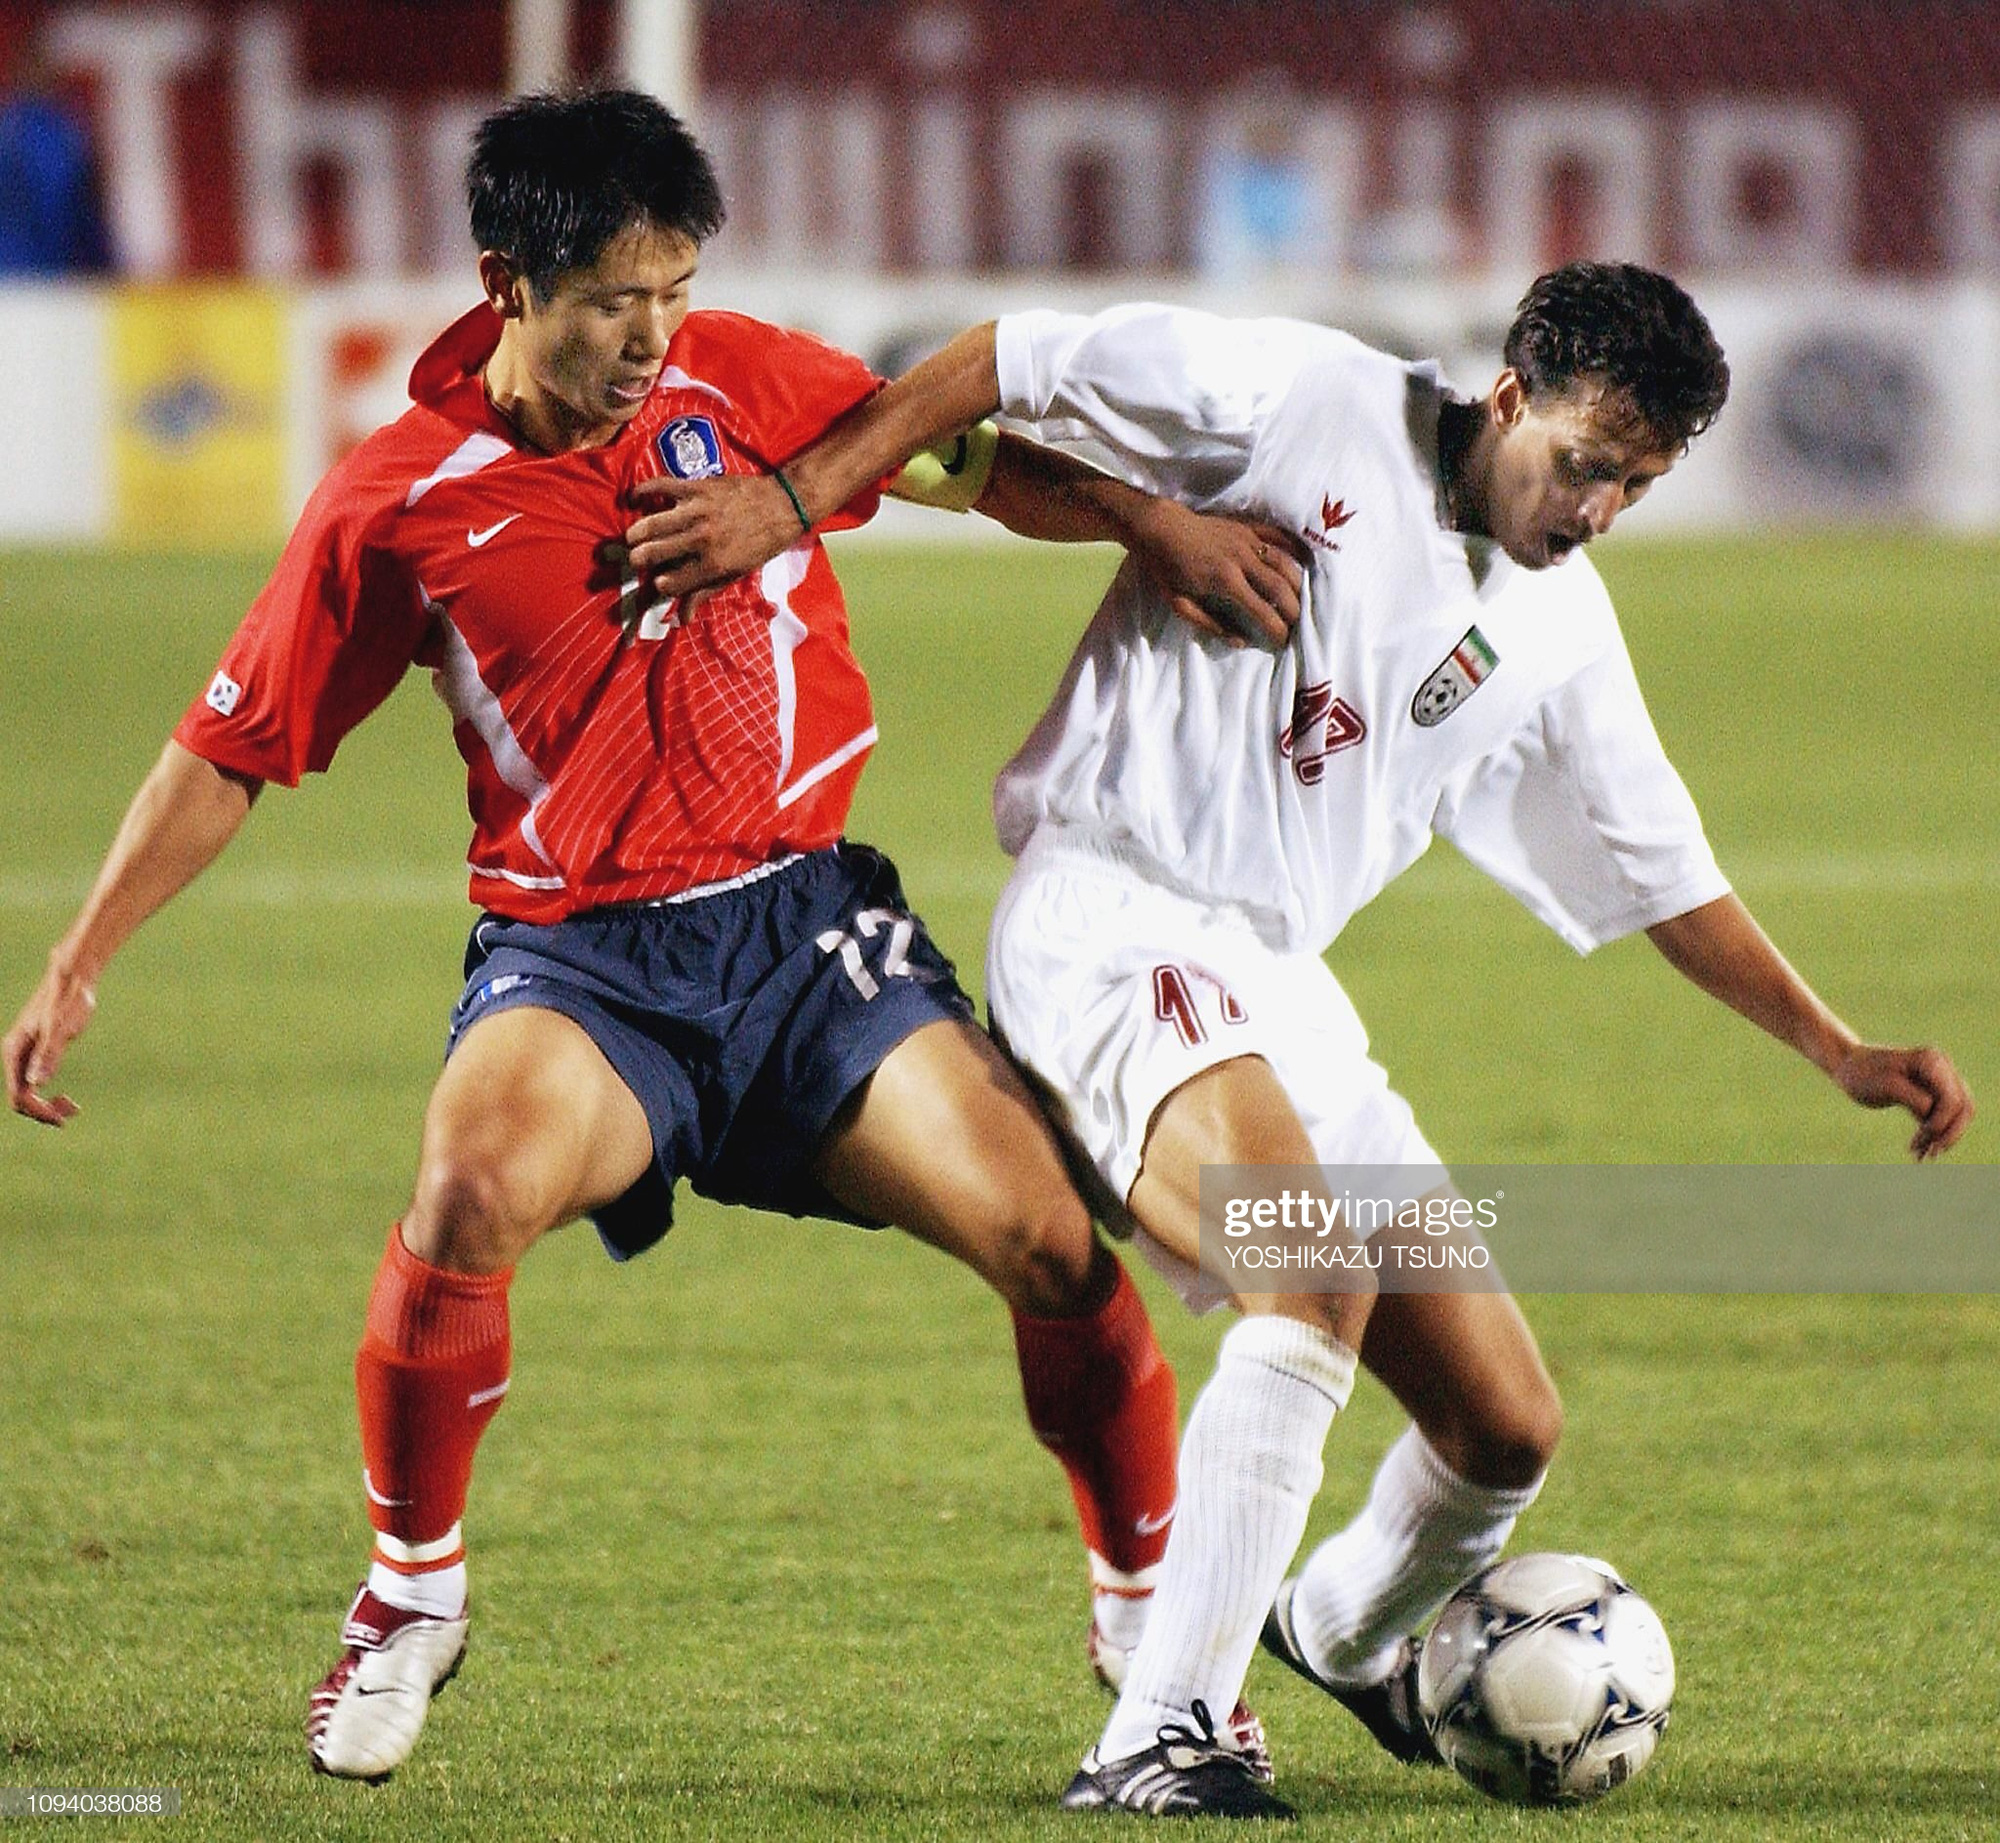 Đối thủ của tuyển Việt Nam từng khiến sự nghiệp HLV Park Hang-seo lao đao - Ảnh 2.